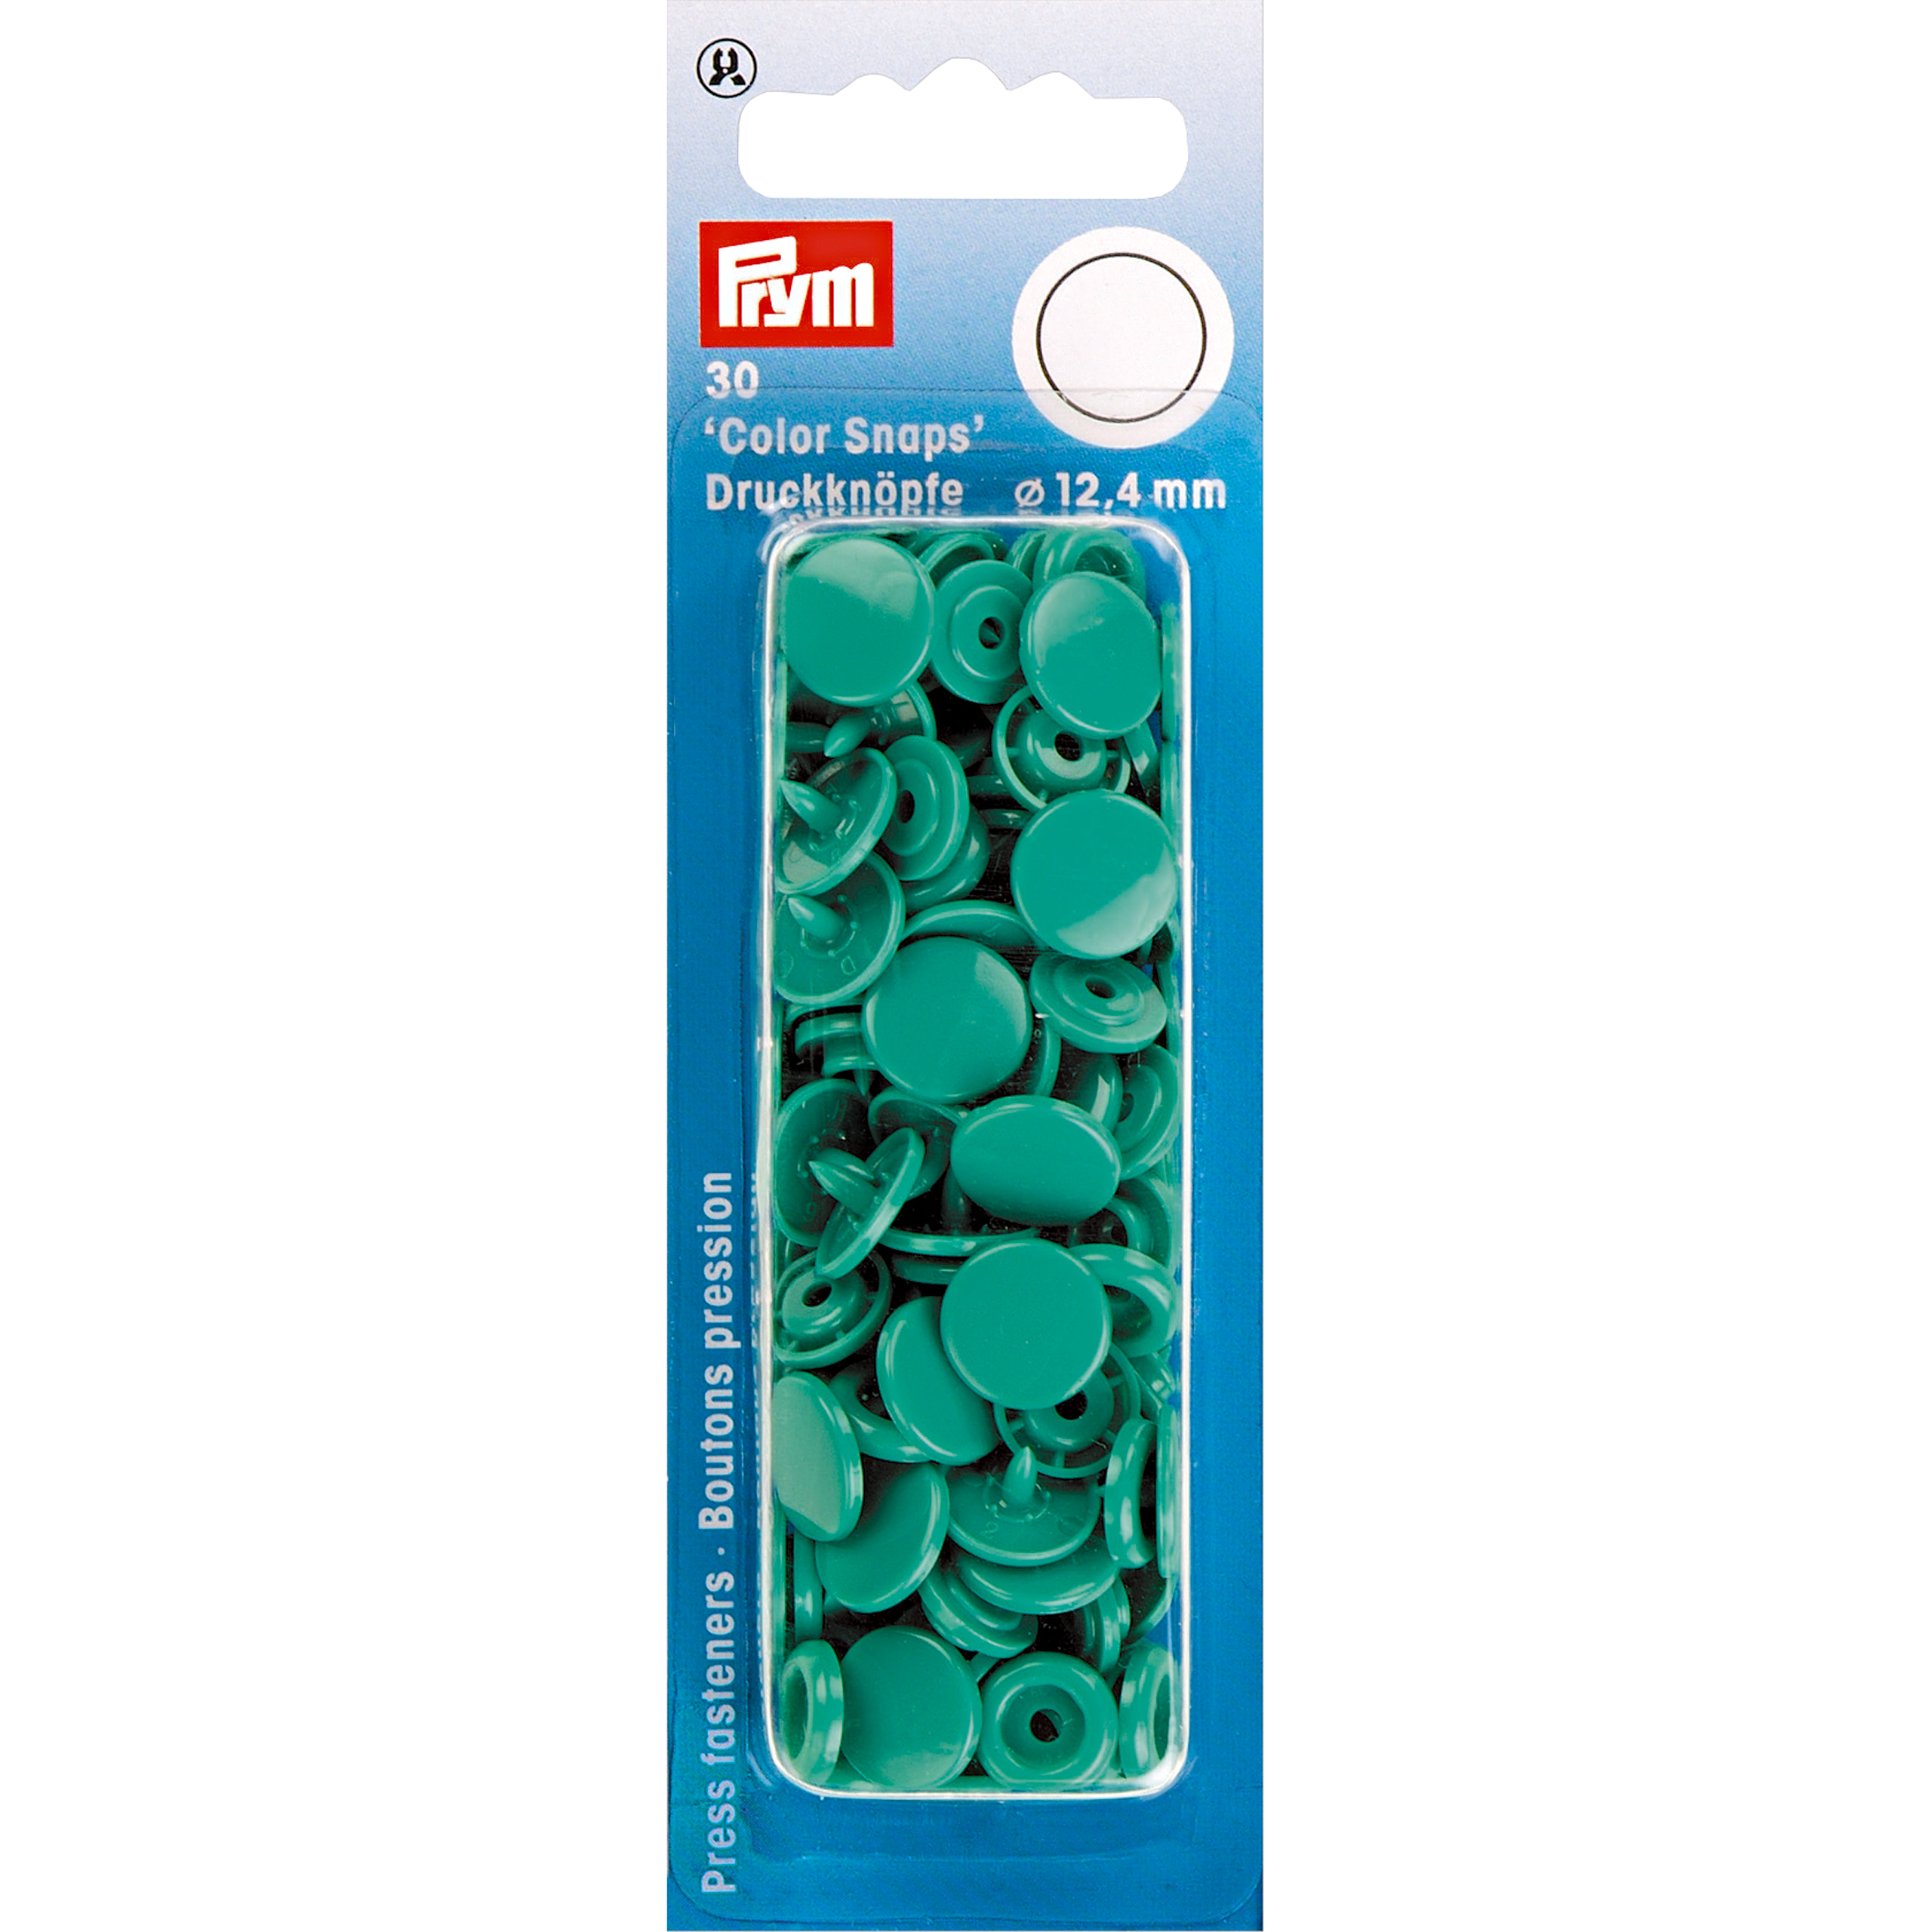 Nähfrei-Druckknöpfe Color Snaps rund 12,4 mm 30 St von Prym grün